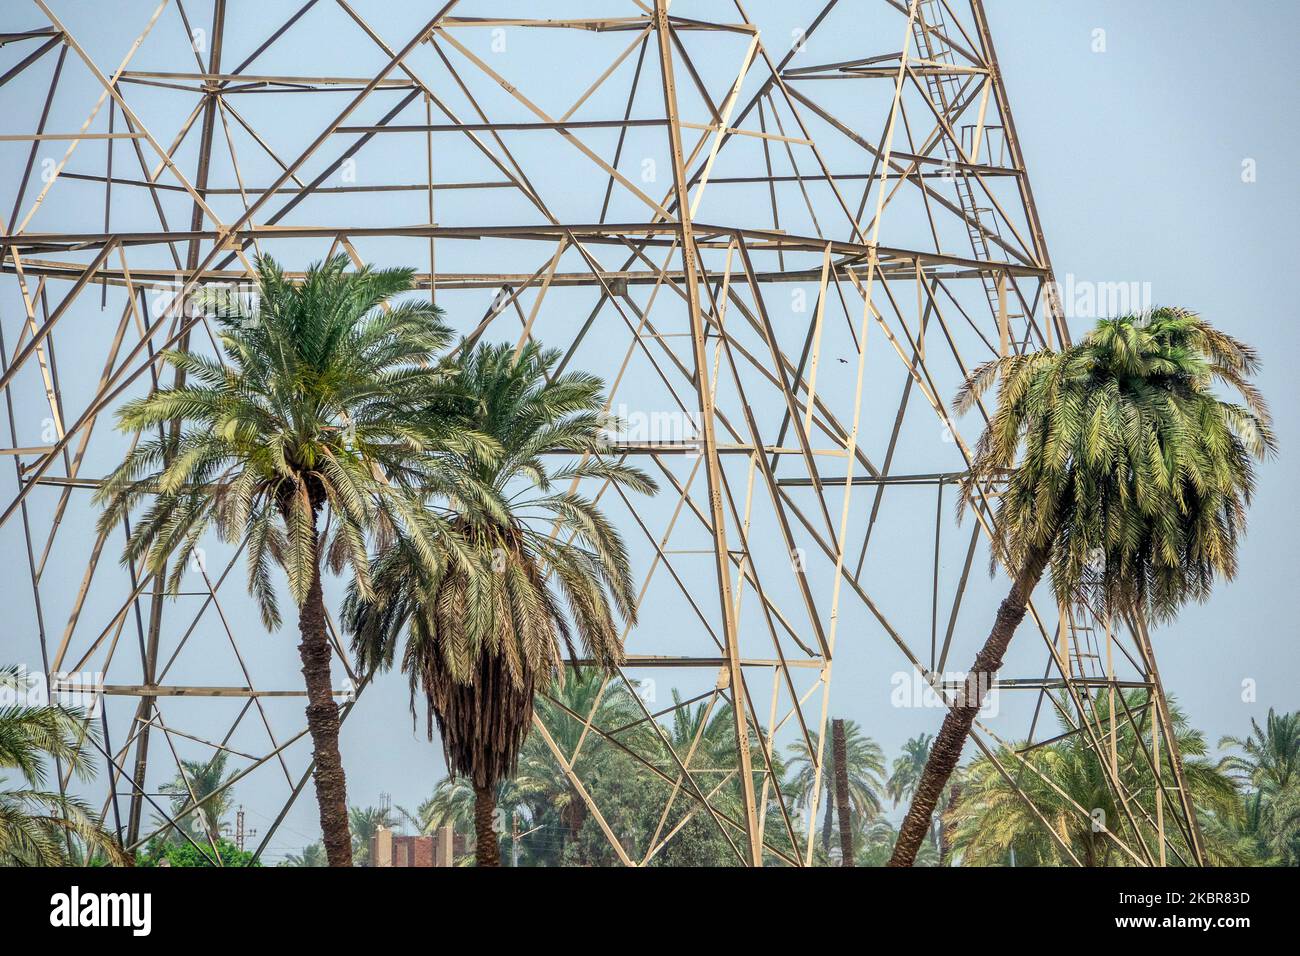 Nahaufnahme von Abschnitten der Basis eines Hochspannungsmasten gegen einen blauen Himmel, umgeben von Palmen Stockfoto